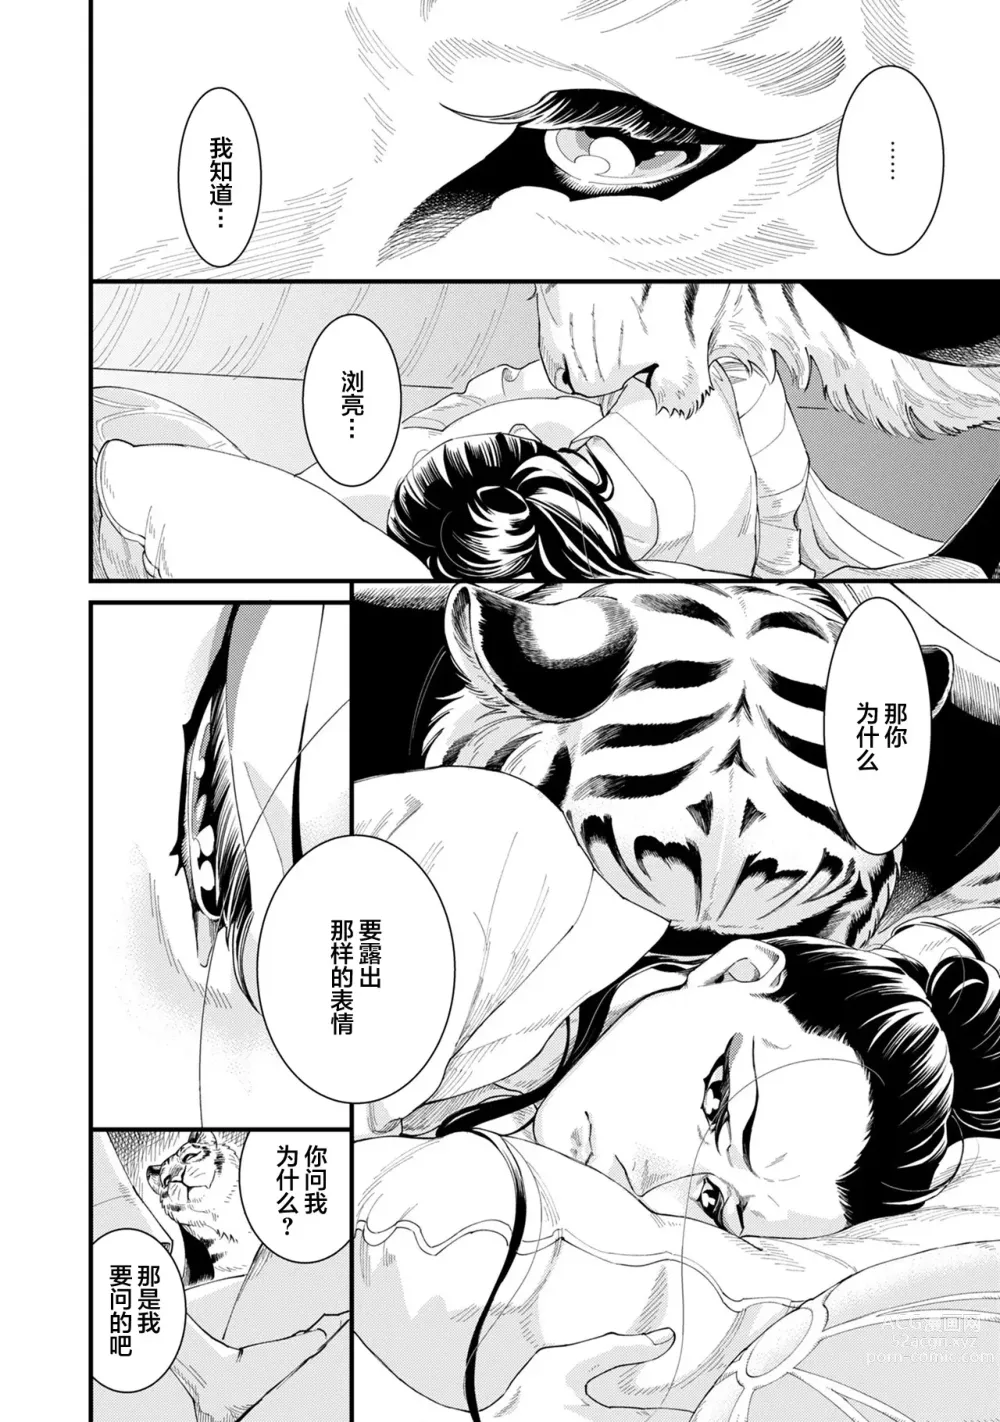 Page 16 of manga JINKO NO HARU